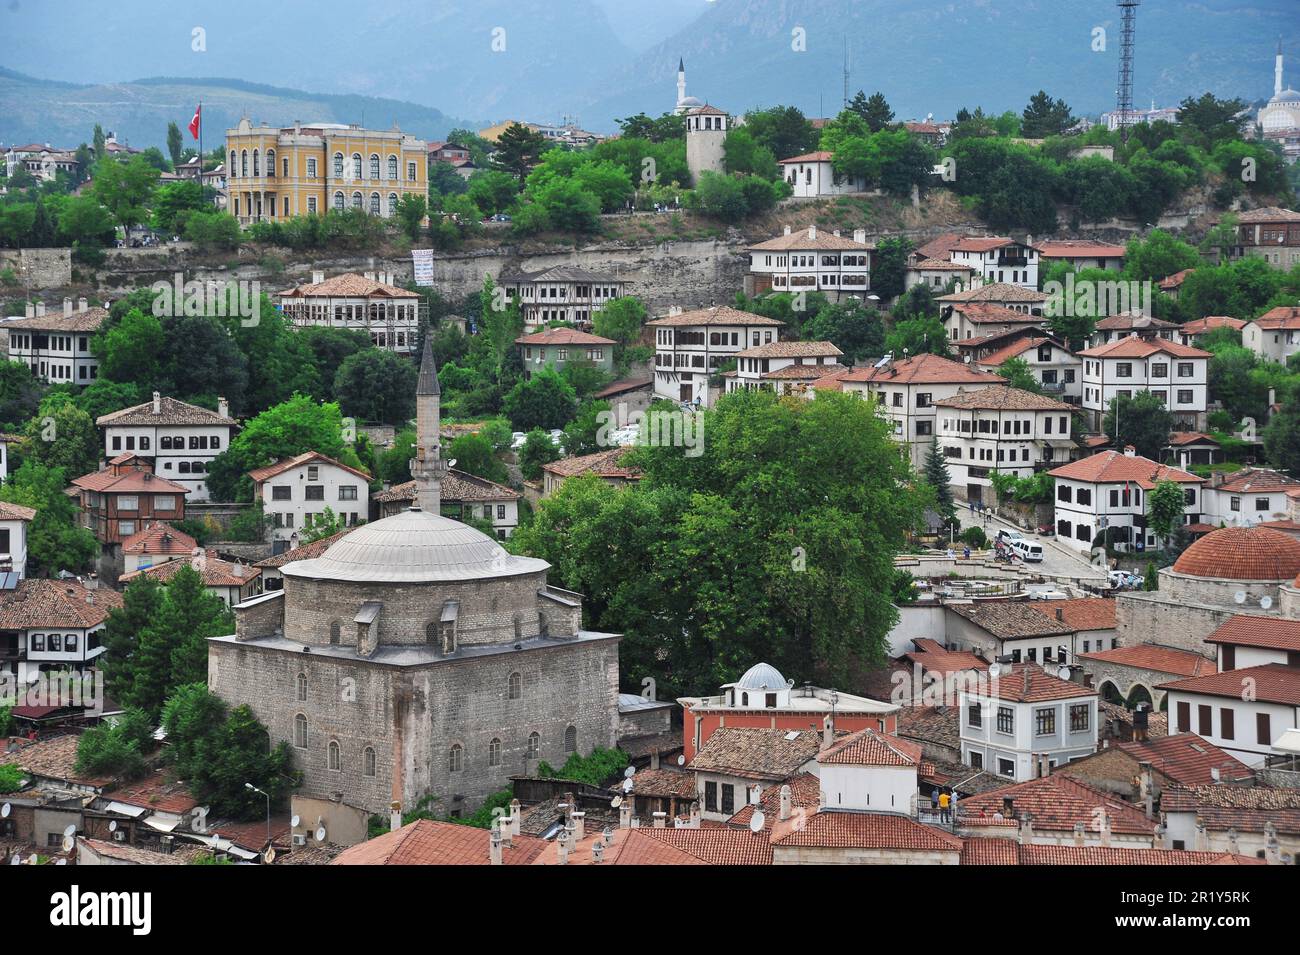 Safranbolu è un distretto della Turchia. È famosa per le sue case ottomane, è inserita nella lista del patrimonio mondiale dell'UNESCO e accoglie molti turisti. Foto Stock